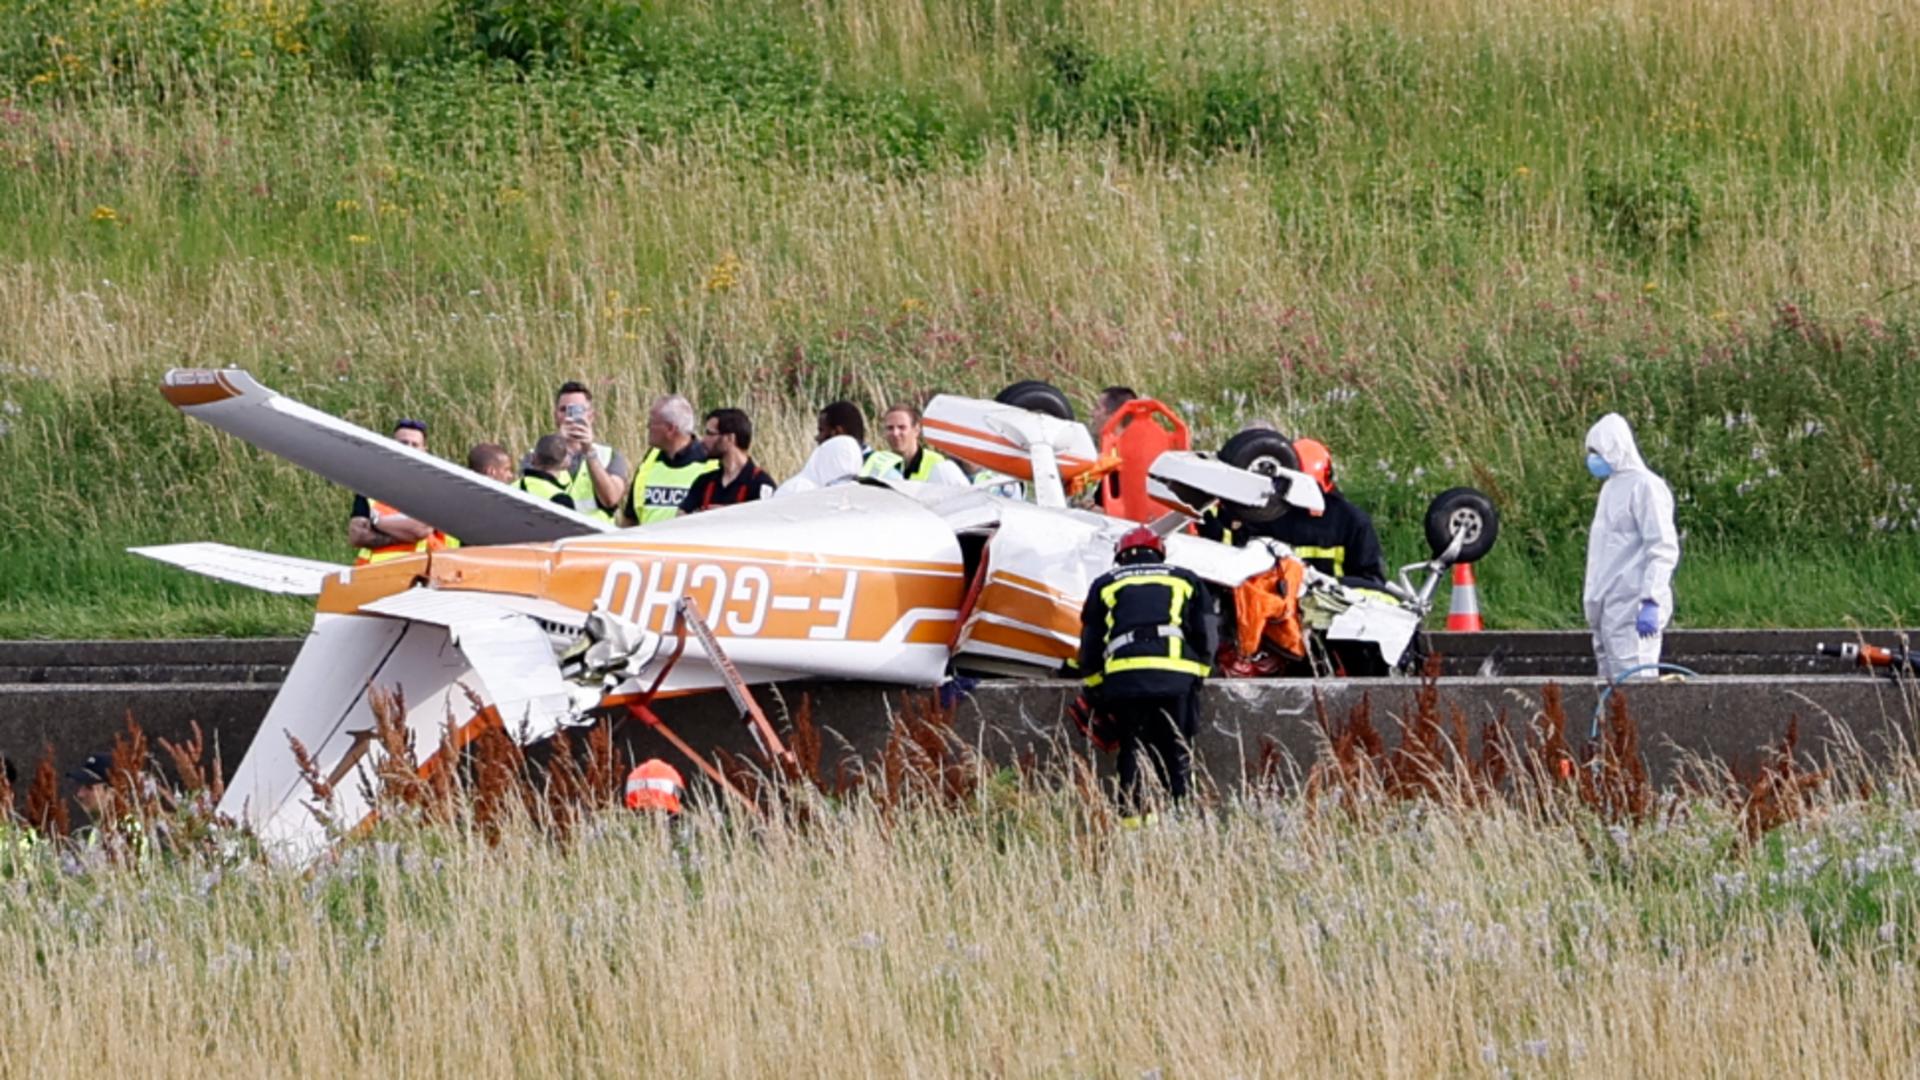 Tragedie în apropierea Parisului! Un avion s-a prăbușit pe o autostradă din Franța: trei morți/ Profimedia